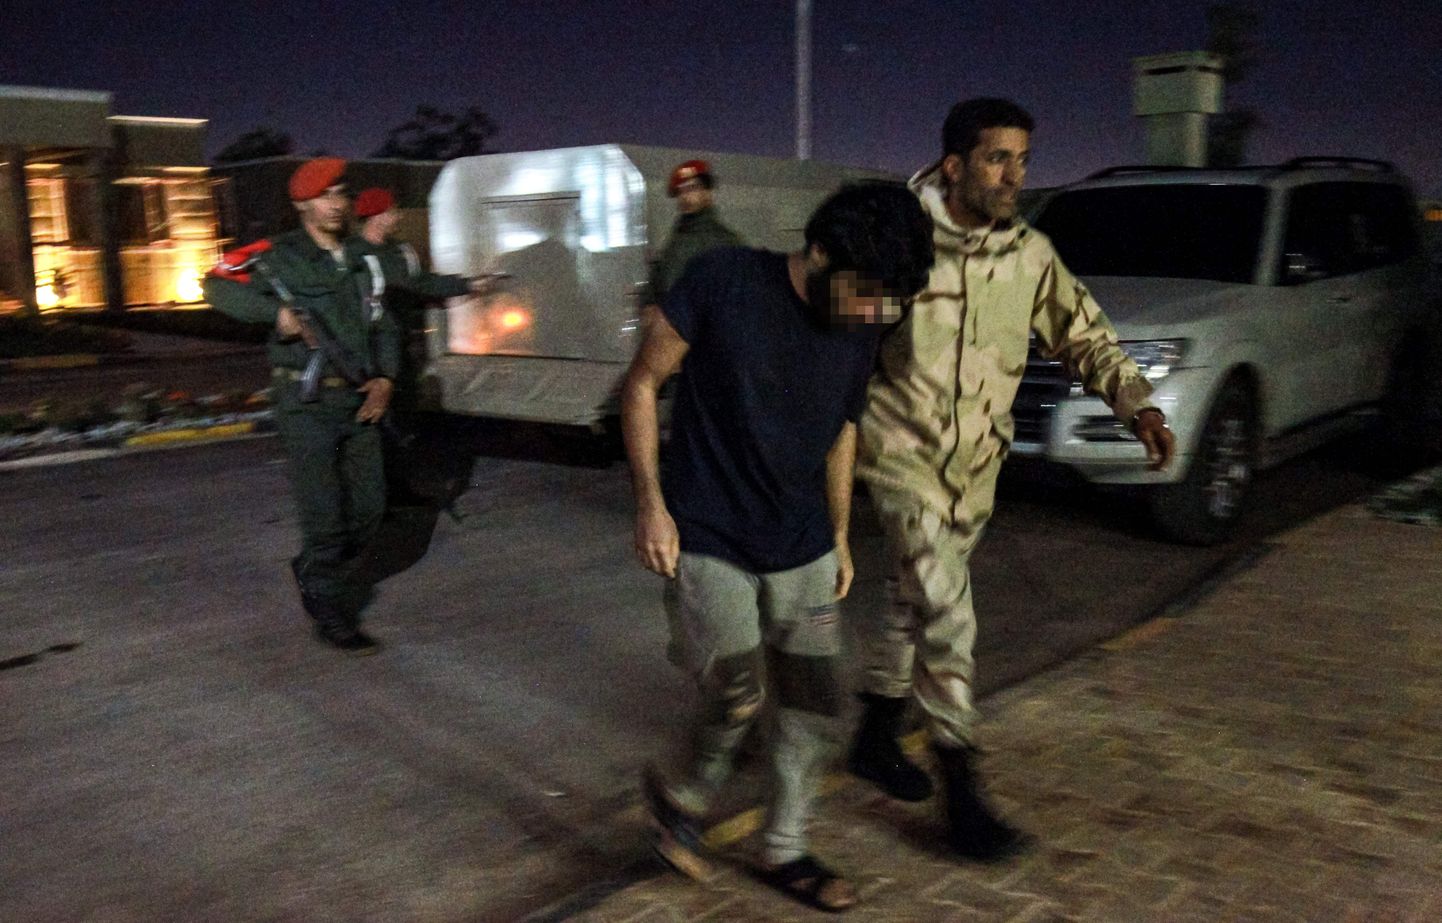 Liibüa idaosas paiknevas Benghazi linnas, mis hetkel on mässulise väepealiku Khalifa Haftari kontrolli all, 5. mail tehtud fotol eskordib Haftari-meelne sõdur keskvalitsuse eest võidelnud meest, kes võeti vangi varem pealetungi käigus pealinna Tripoli lähistel. Haftarile ustavad võitlejad kahtlustavad meest Süüriast saabunud palgasõdurite sekka kuulumises, kelle tõid Liibüasse nende sõnul väidetavalt Türgi võimud.